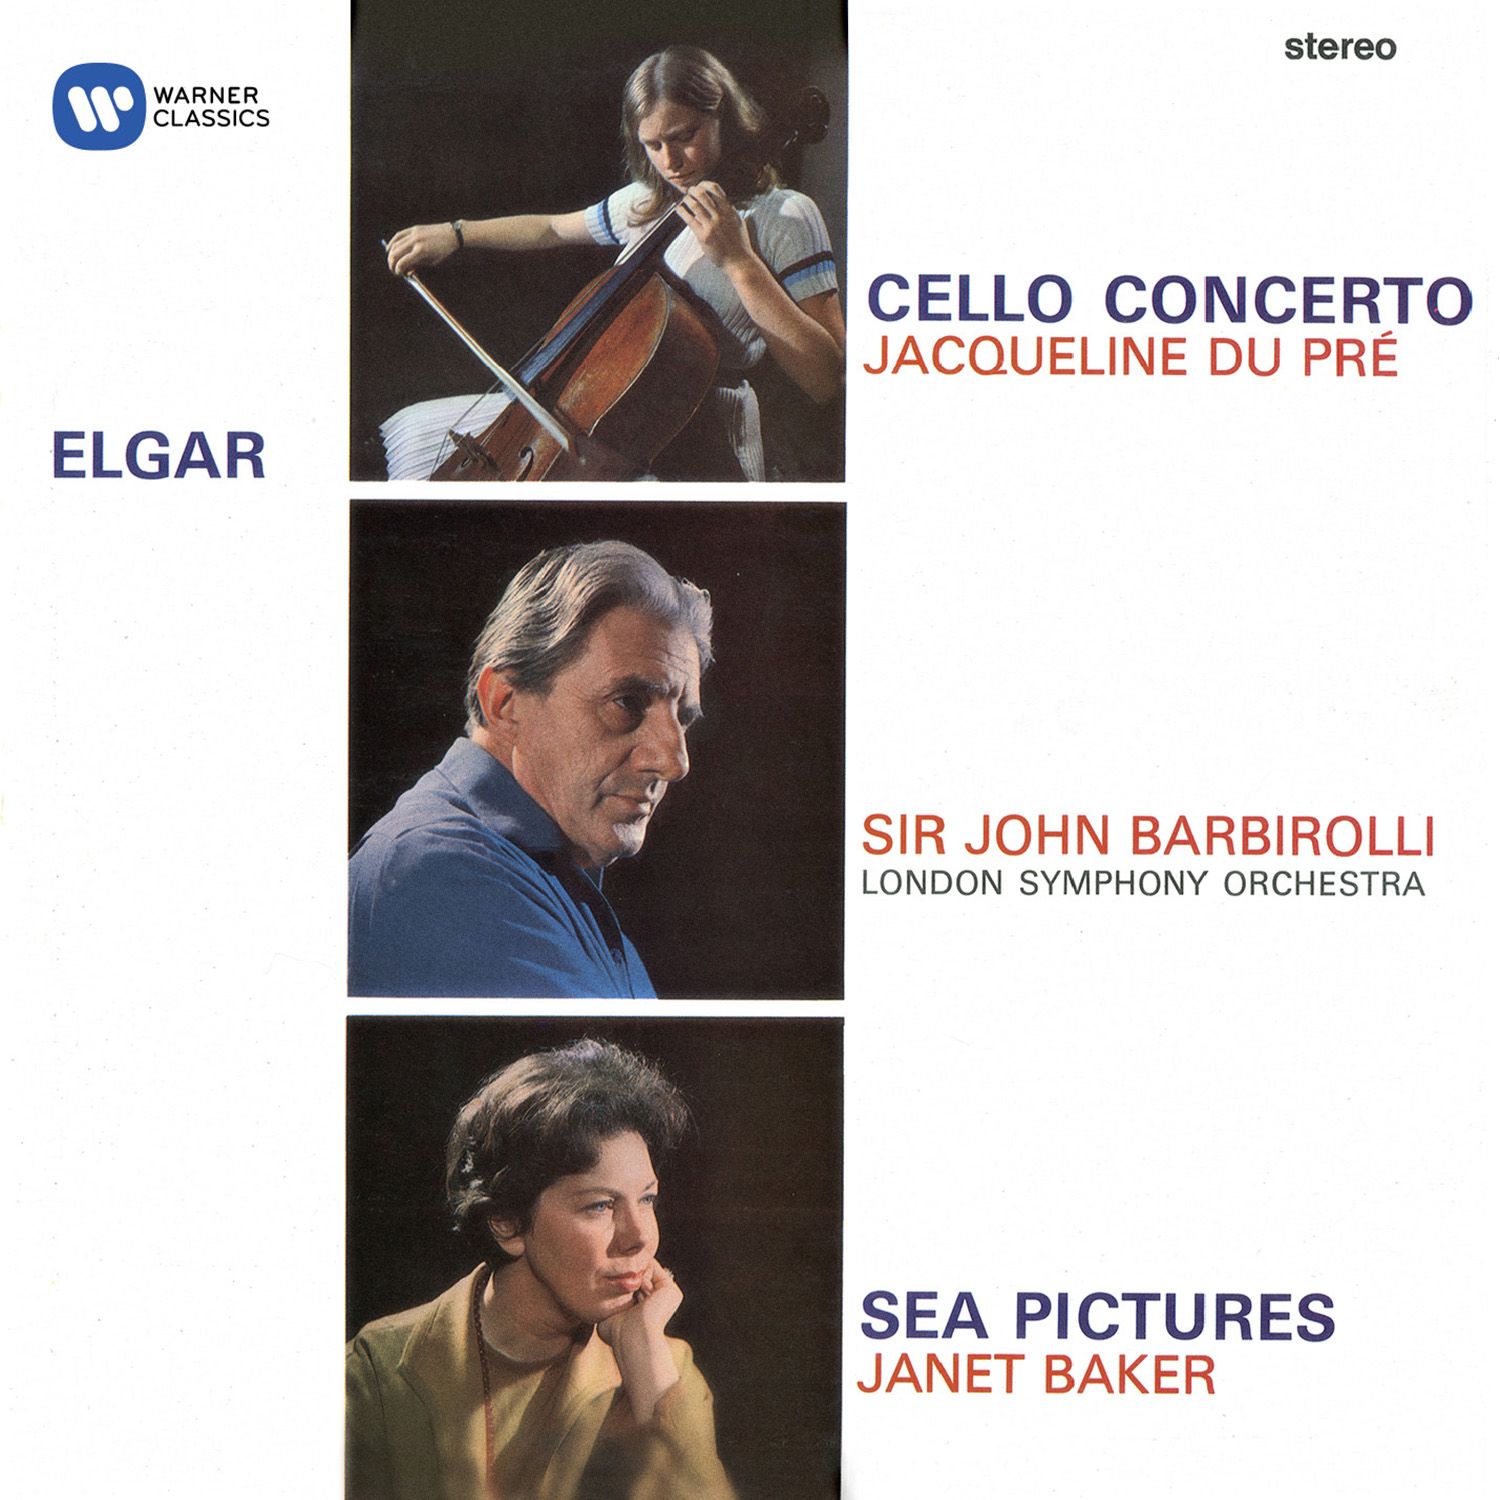 Cello Concerto in E Minor, Op. 85: IV. Allegro - Moderato - Allegro ma non troppo - Adagio